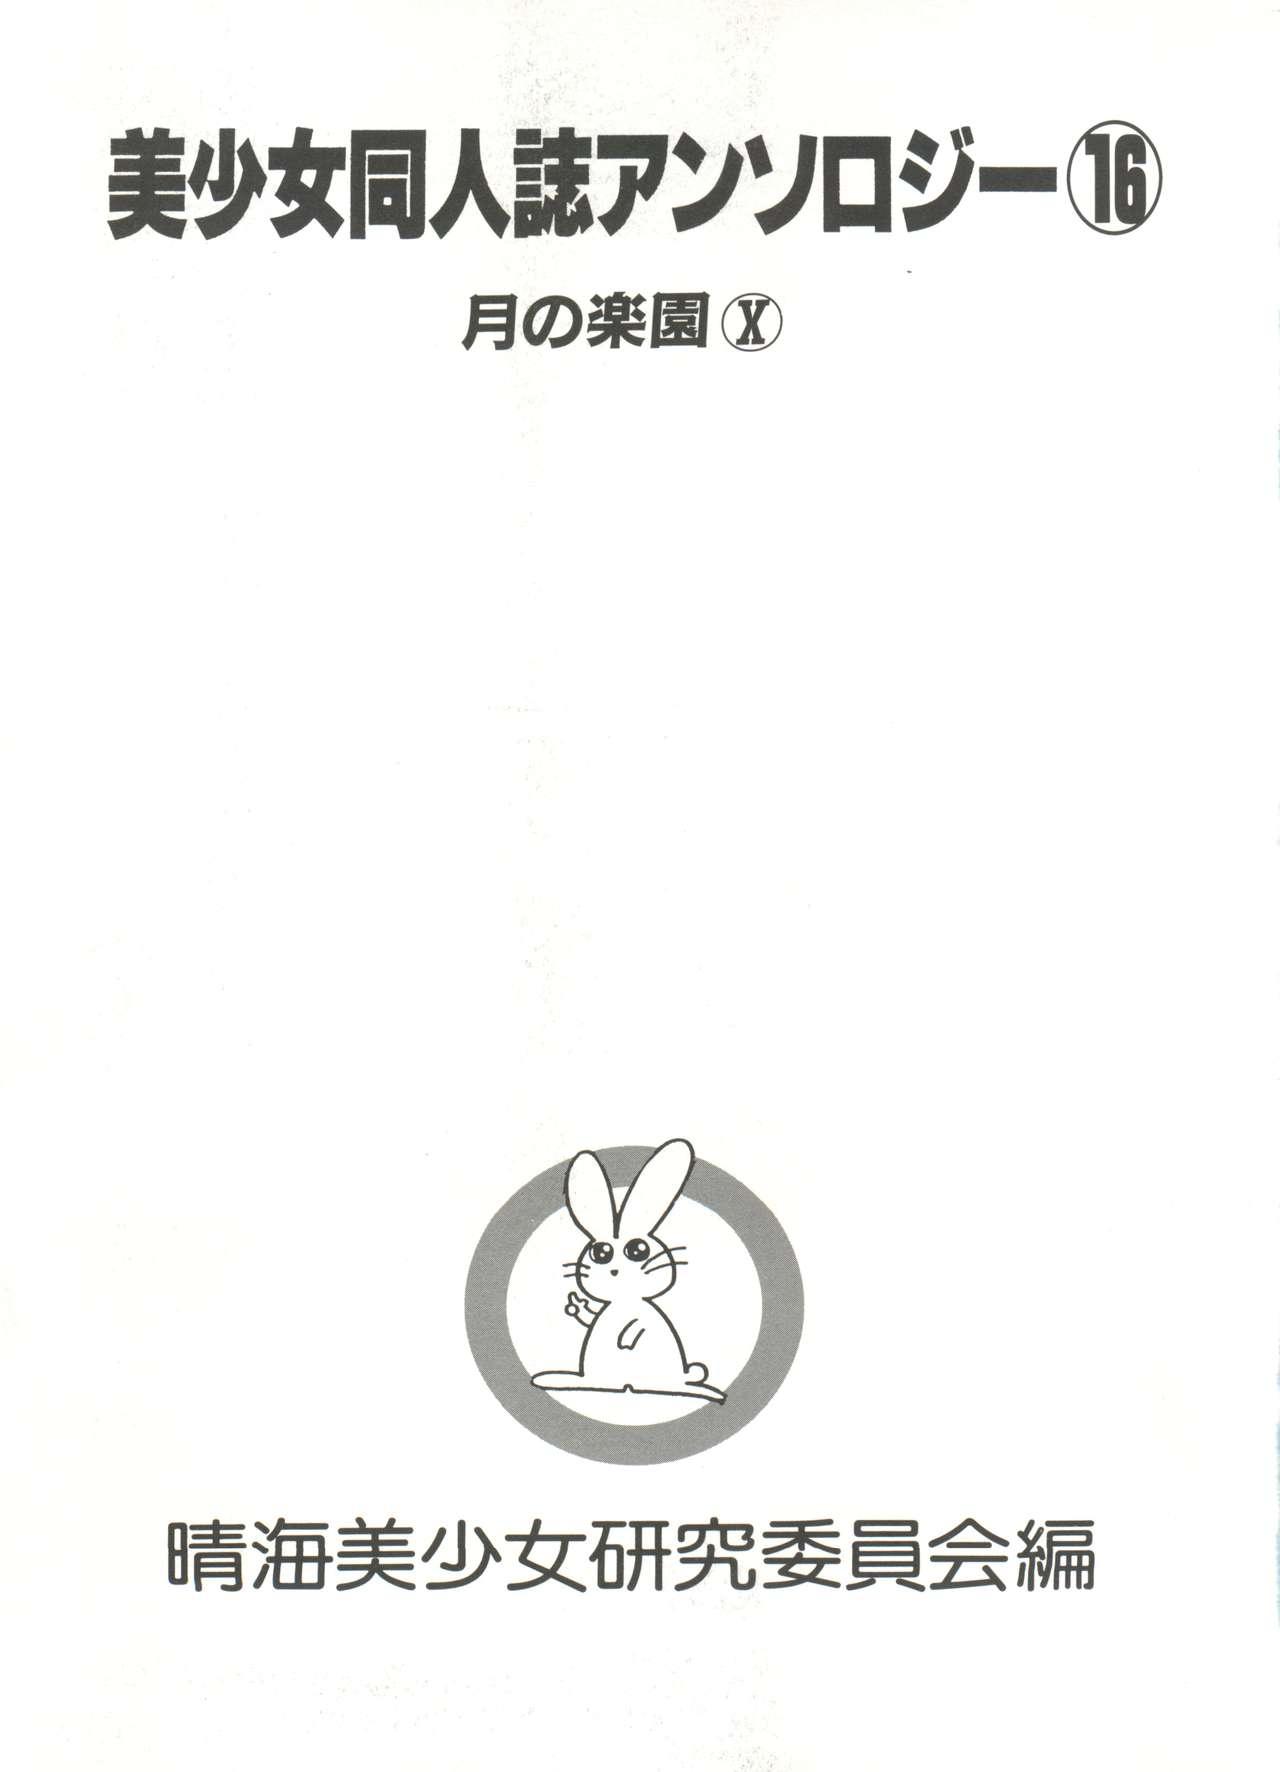 Bishoujo Doujinshi Anthology 16 - Moon Paradise 10 Tsuki no Rakuen 5